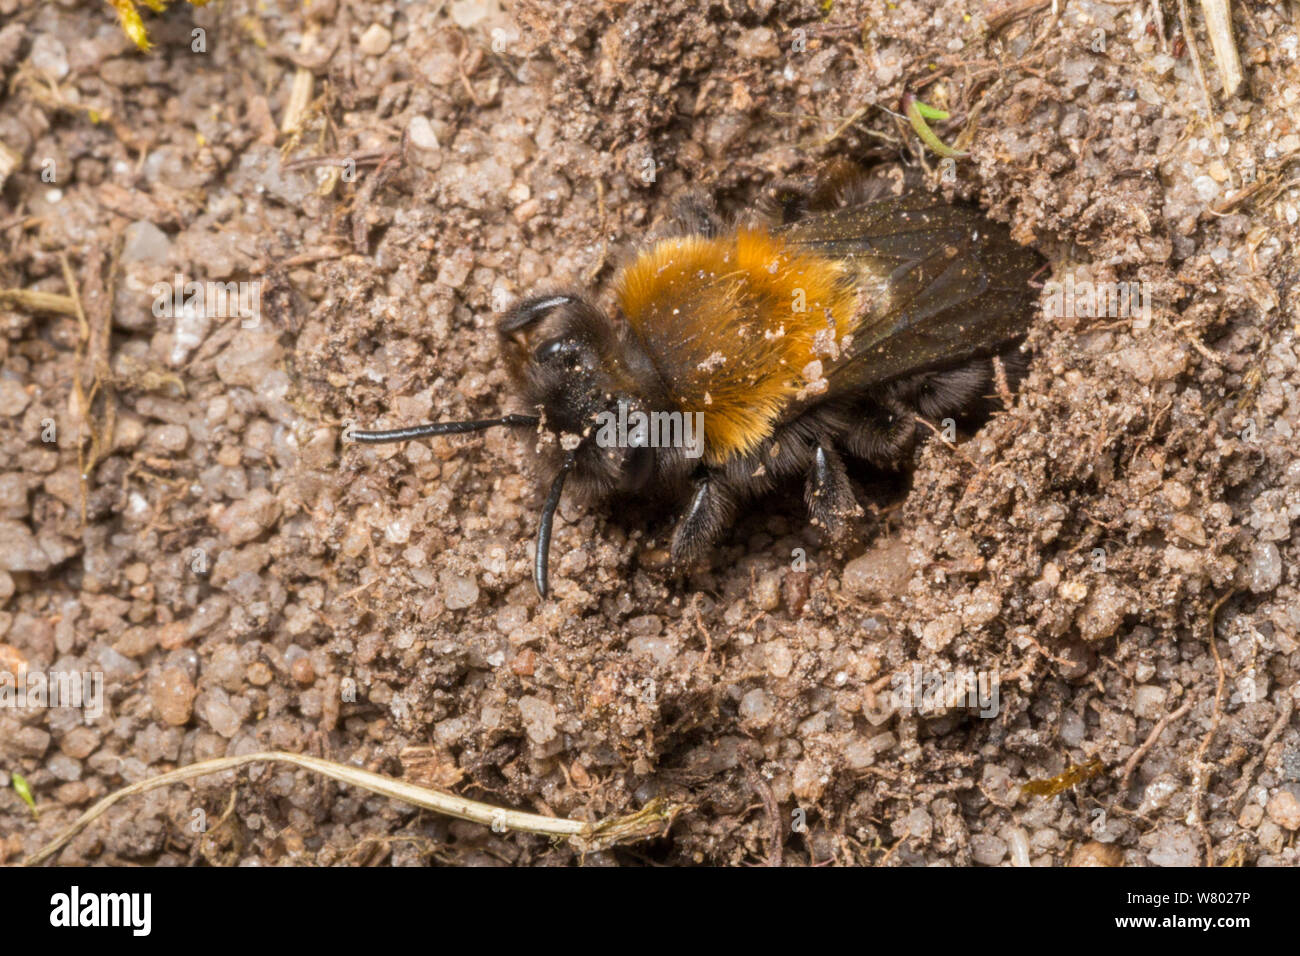 Minería (abeja Andrena clarkella) hembra excavando anidan en el suelo arenoso. Peak District National Park, Derbyshire, Reino Unido. De abril. Foto de stock